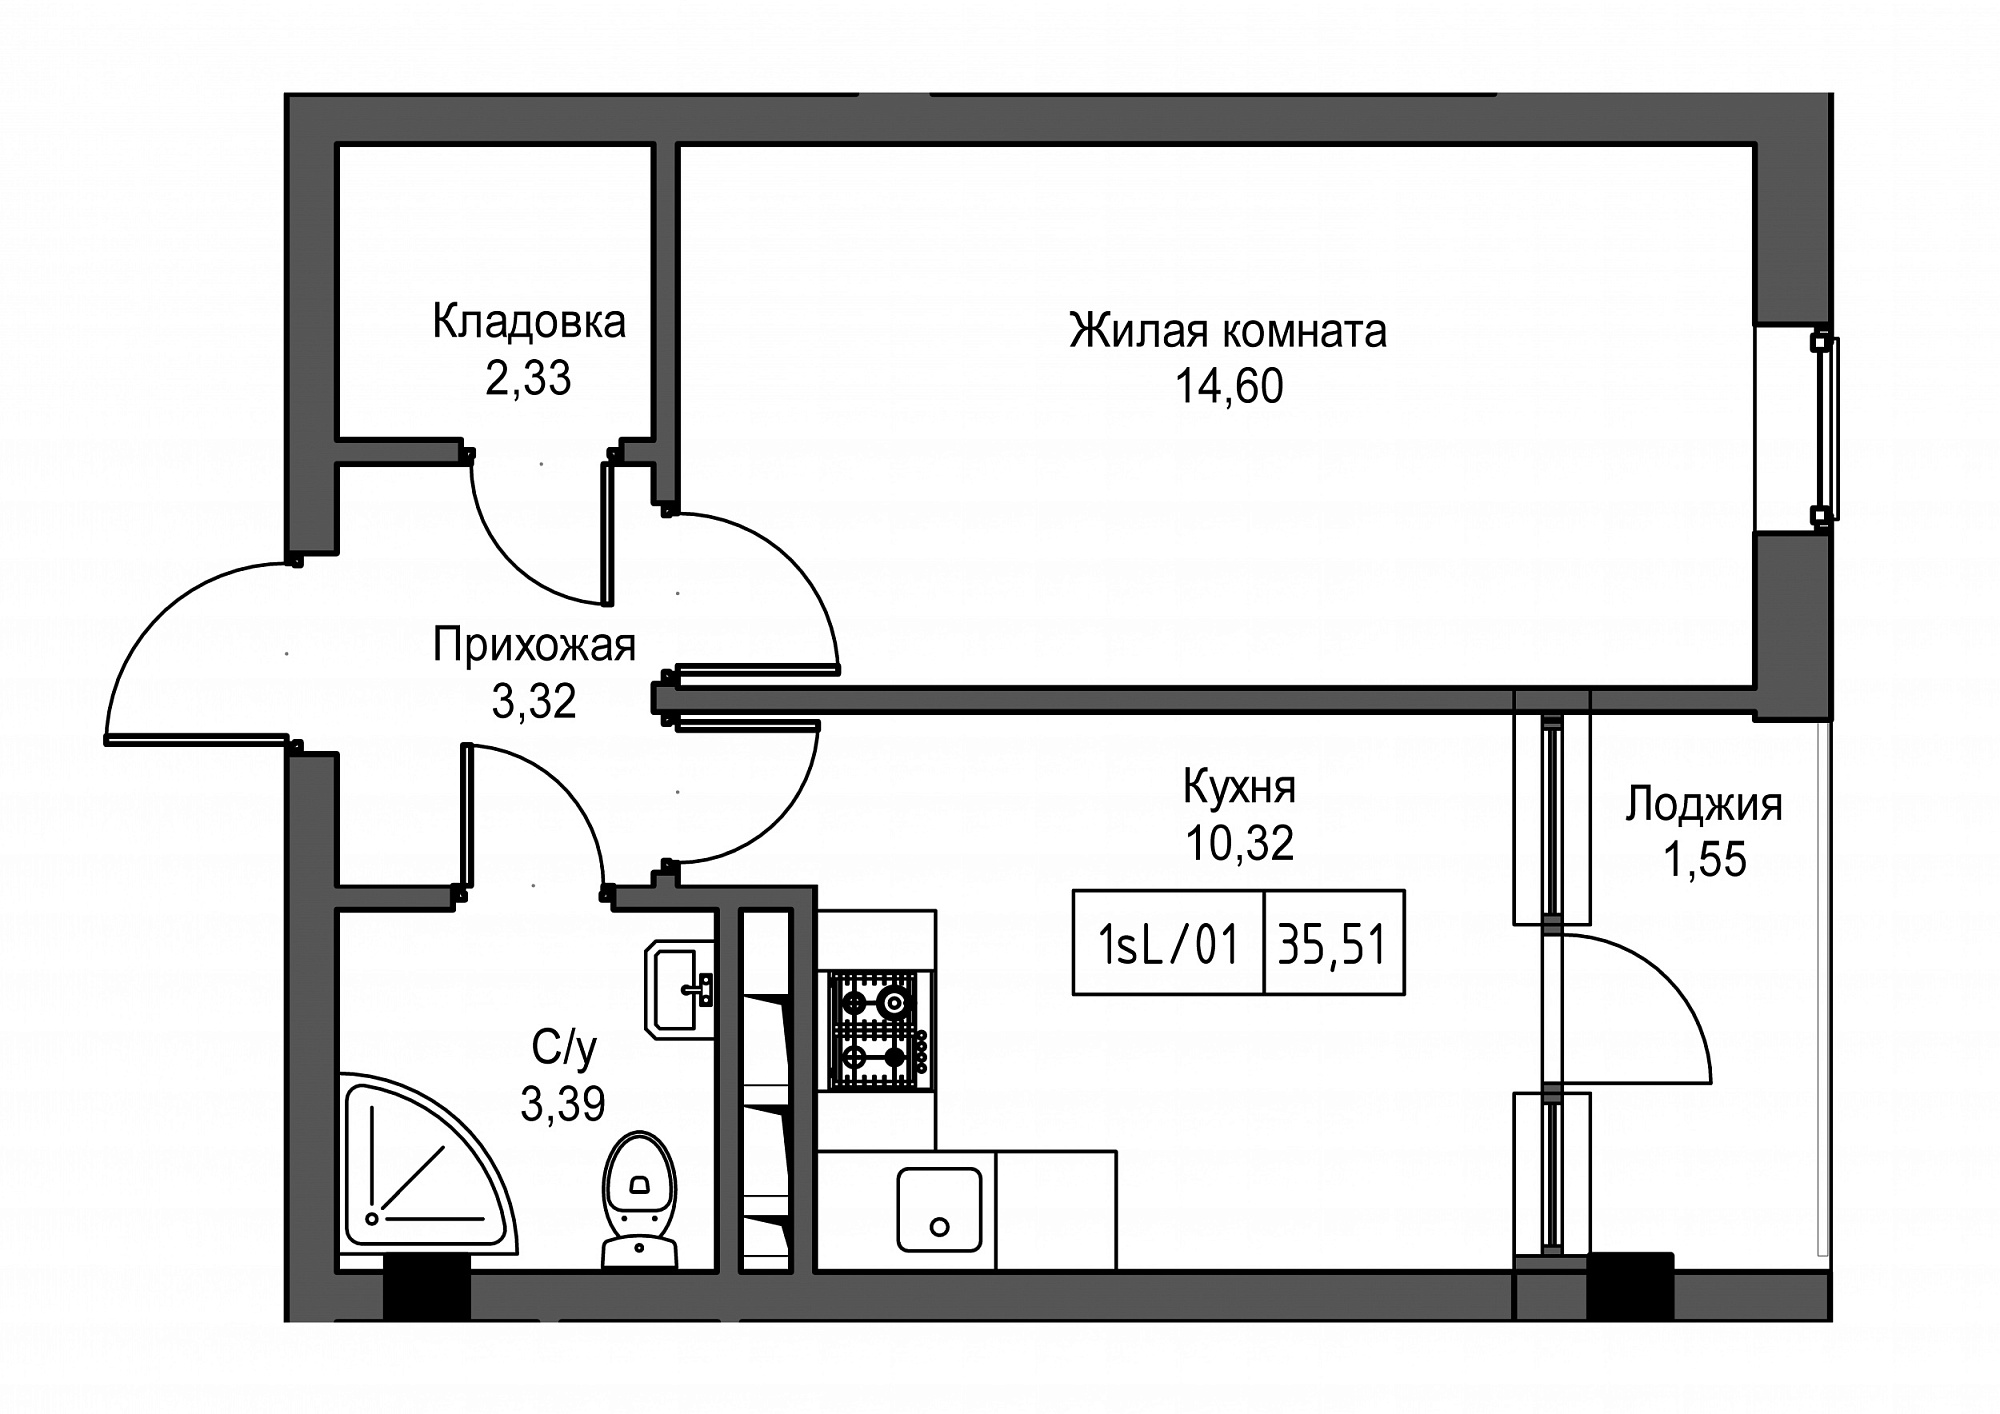 Планировка 1-к квартира площей 35.51м2, UM-002-03/0001.